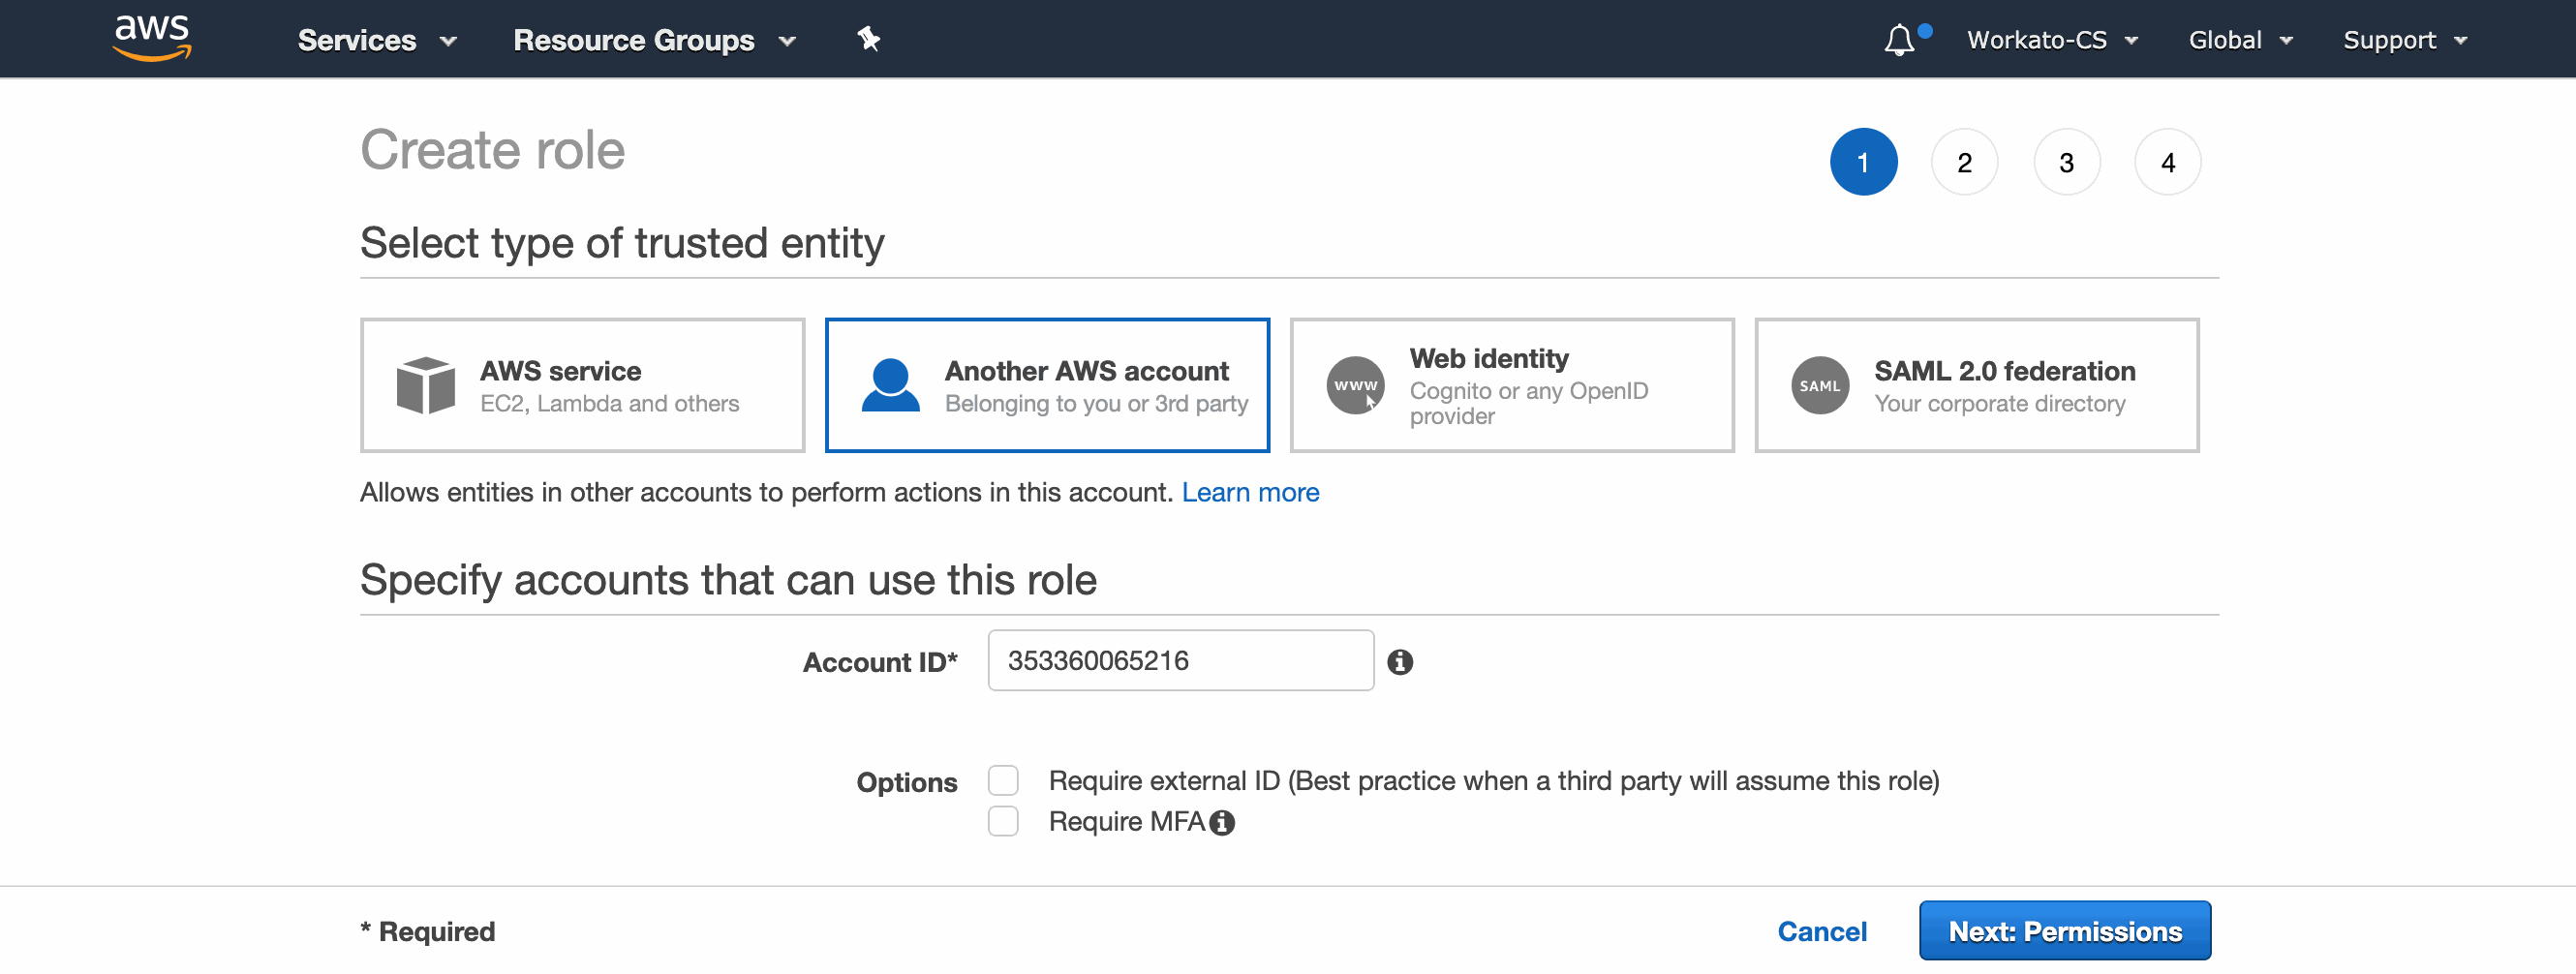 Workato Amazon S3 Account ID